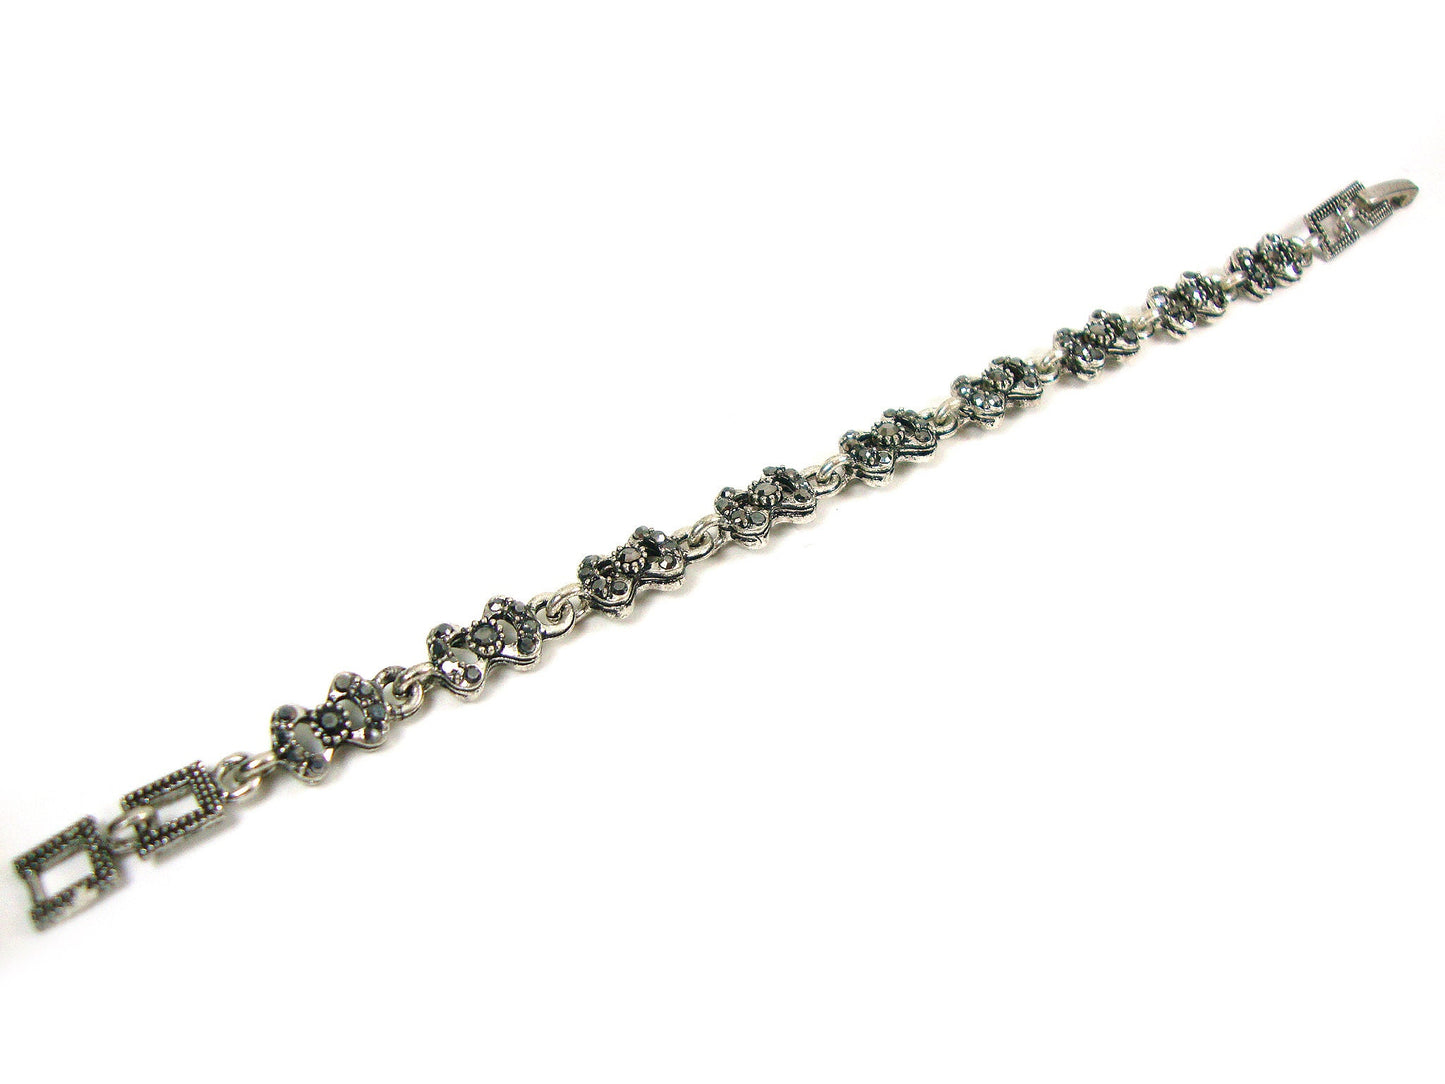 Türkisches Schmuckarmband, grau-silberne Kristalle, modernes Armband im feinen Stil, ethnisches antikes Armband, türkisches Armband, traditioneller Schmuck